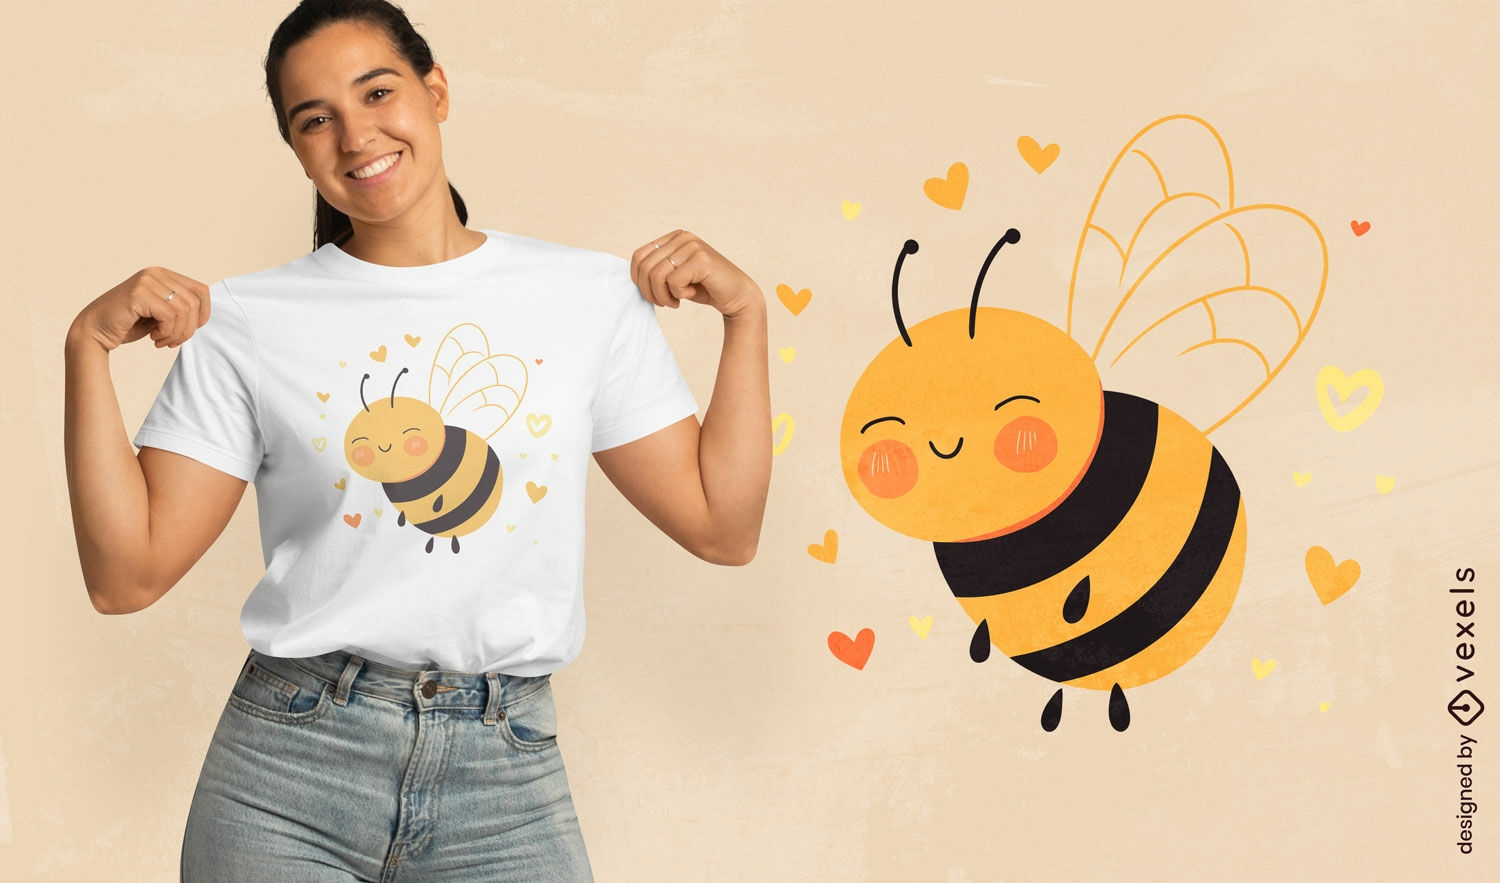 Dise?o de camiseta con gr?fico de abeja alegre.